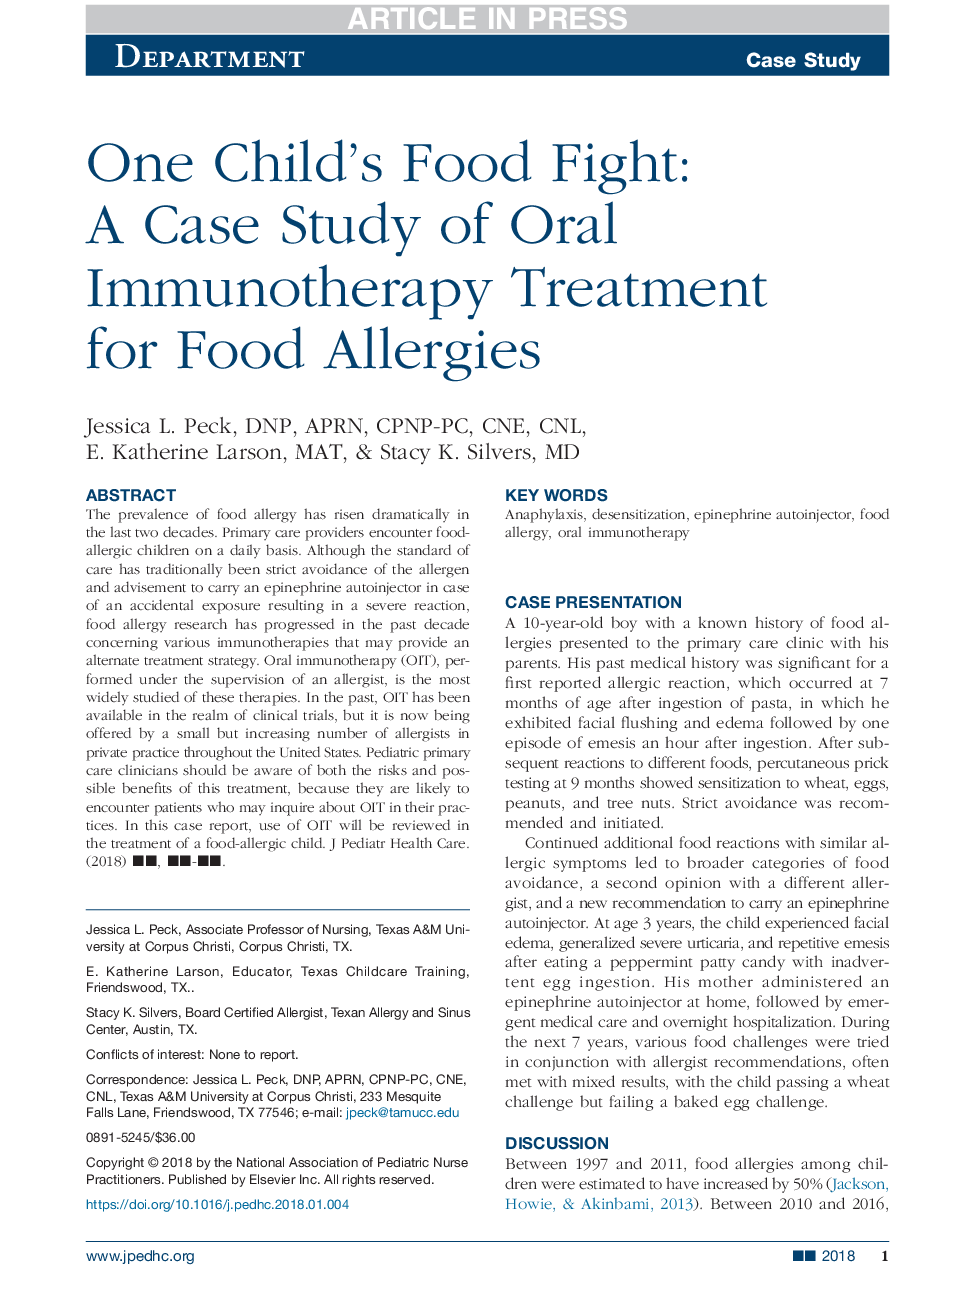 مبارزه با مواد غذایی یک کودک: مطالعه موردی درمان ایمن سازی دهان و دندان برای آلرژی غذایی 